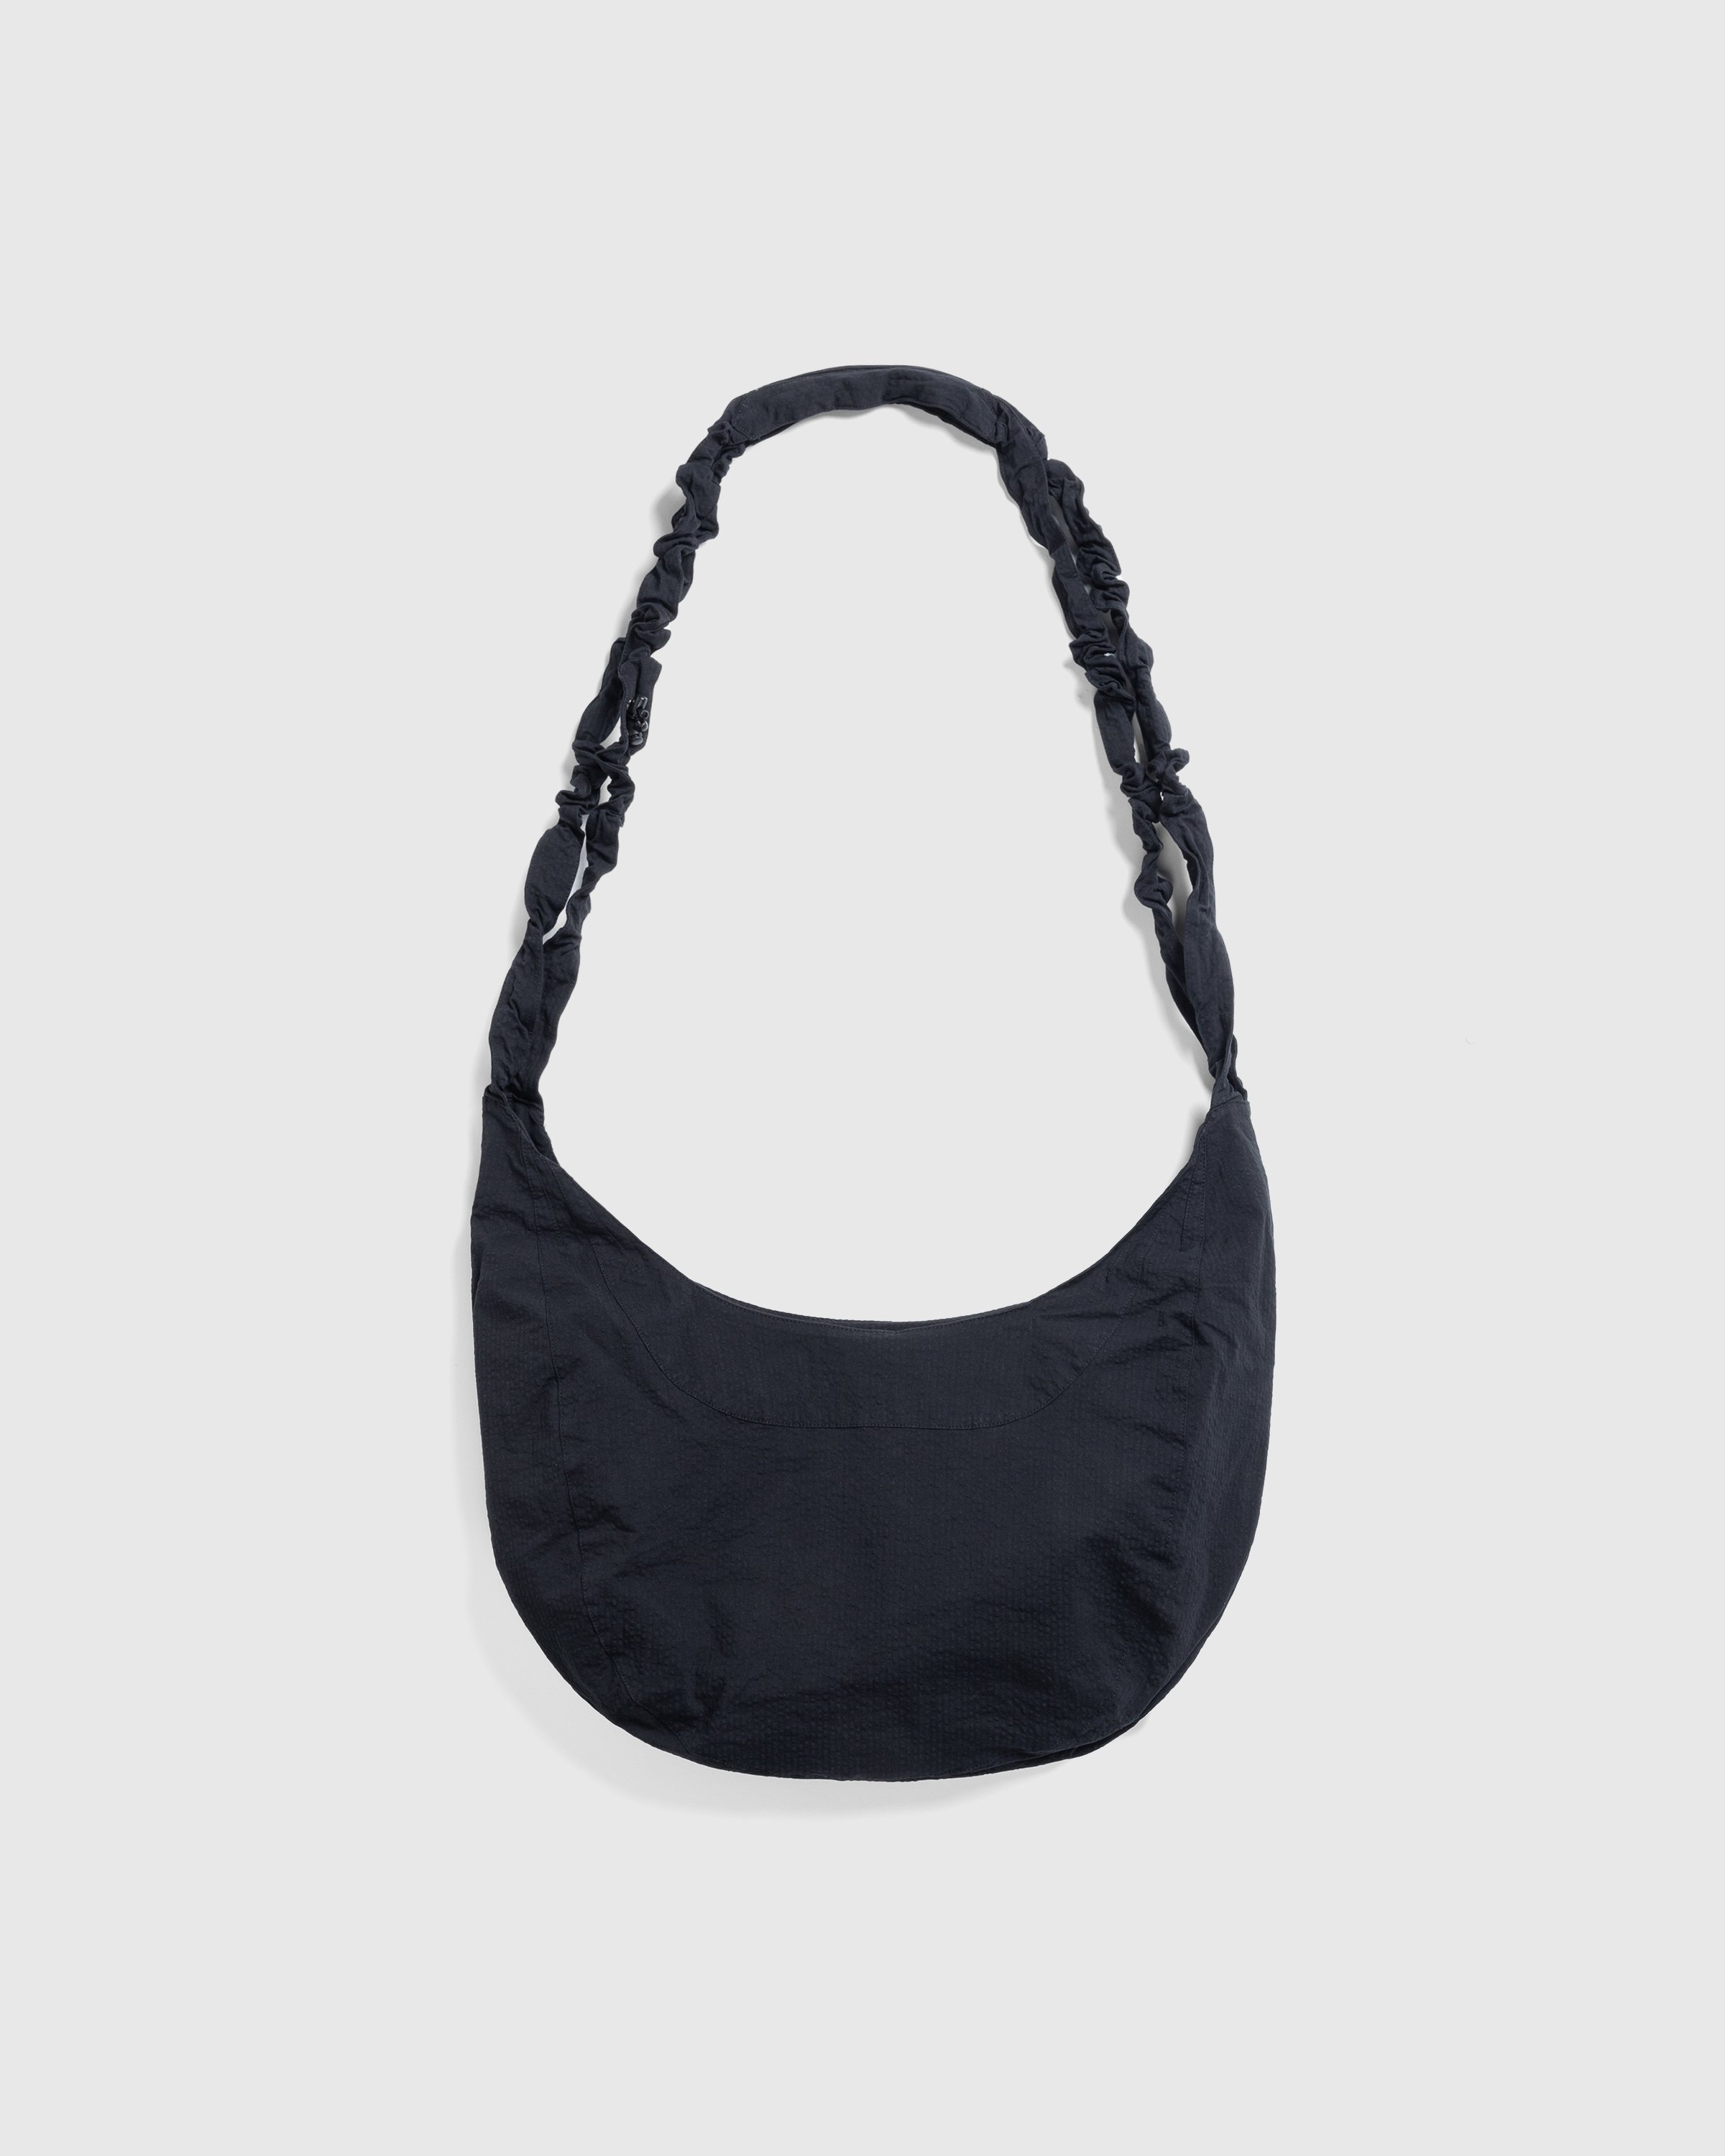 _J.L-A.L_ - Torsade Bag Black - Accessories - Black - Image 1